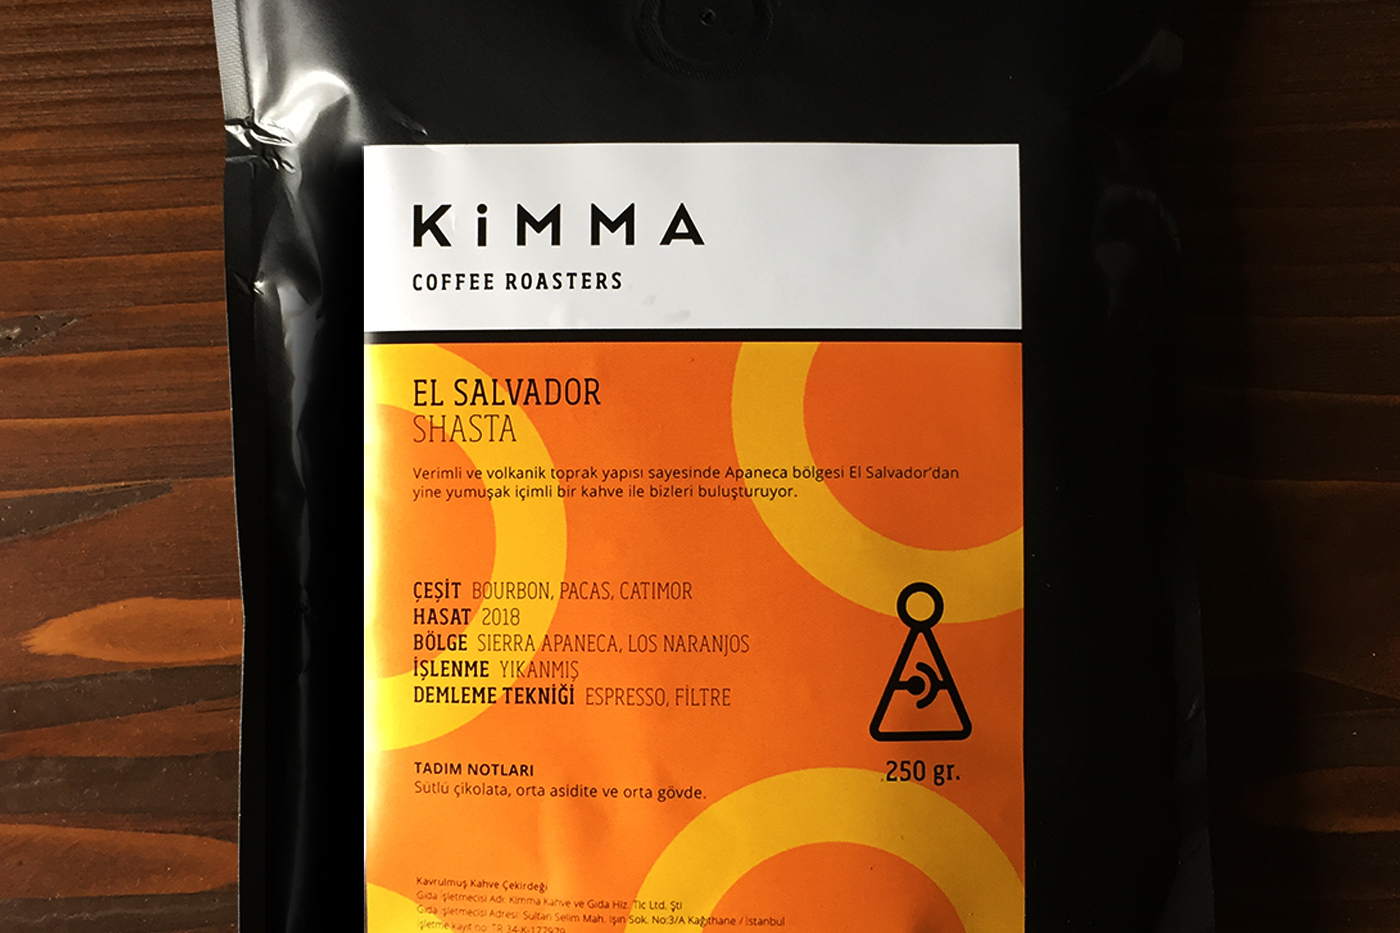 El Salvador Shasta Kimma Coffee